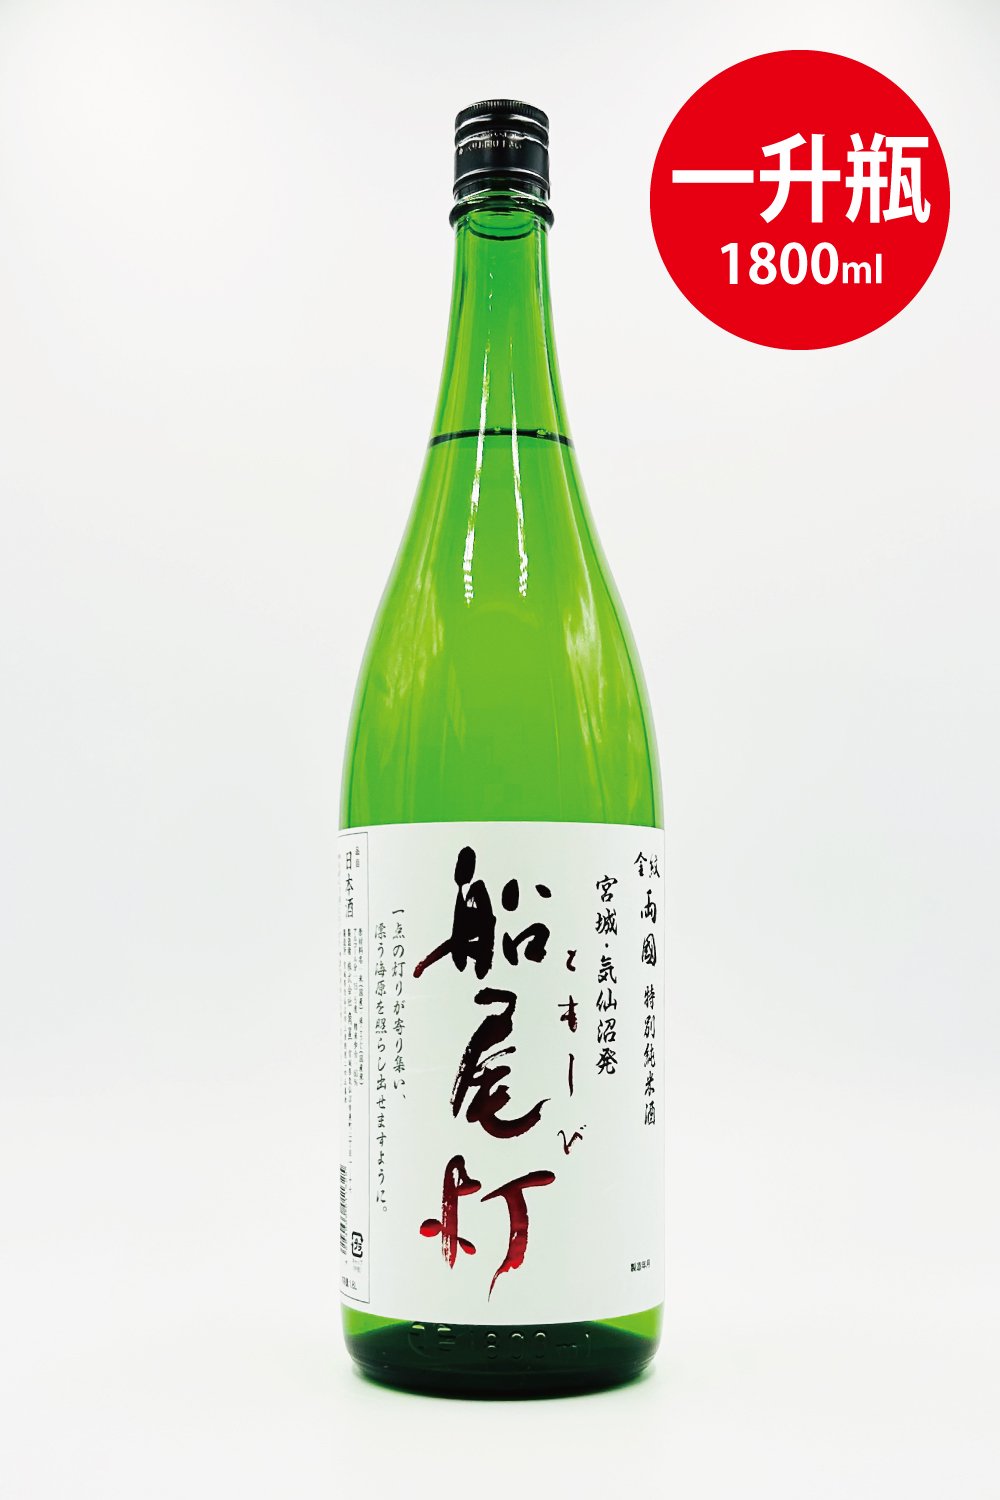 カズキング様 ご依頼のお酒一升瓶 [ 日本酒 1800ml ] - 日本酒